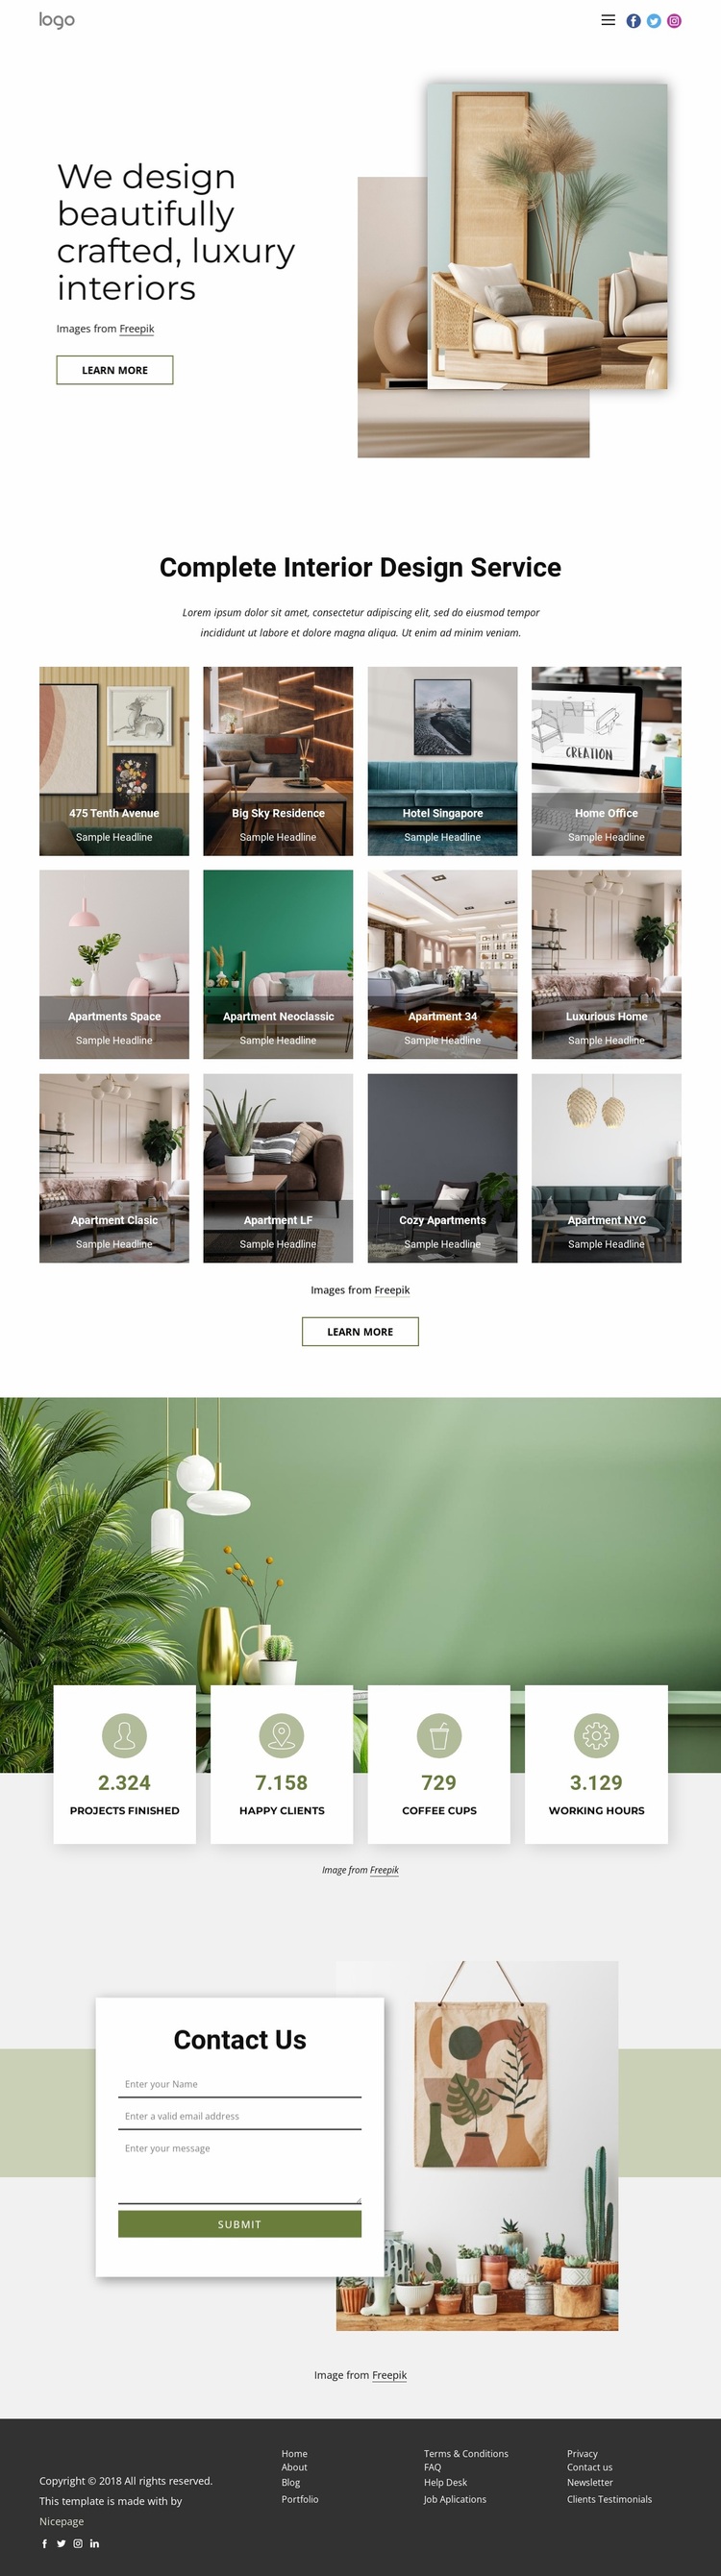 We design luxury interiors Website Design